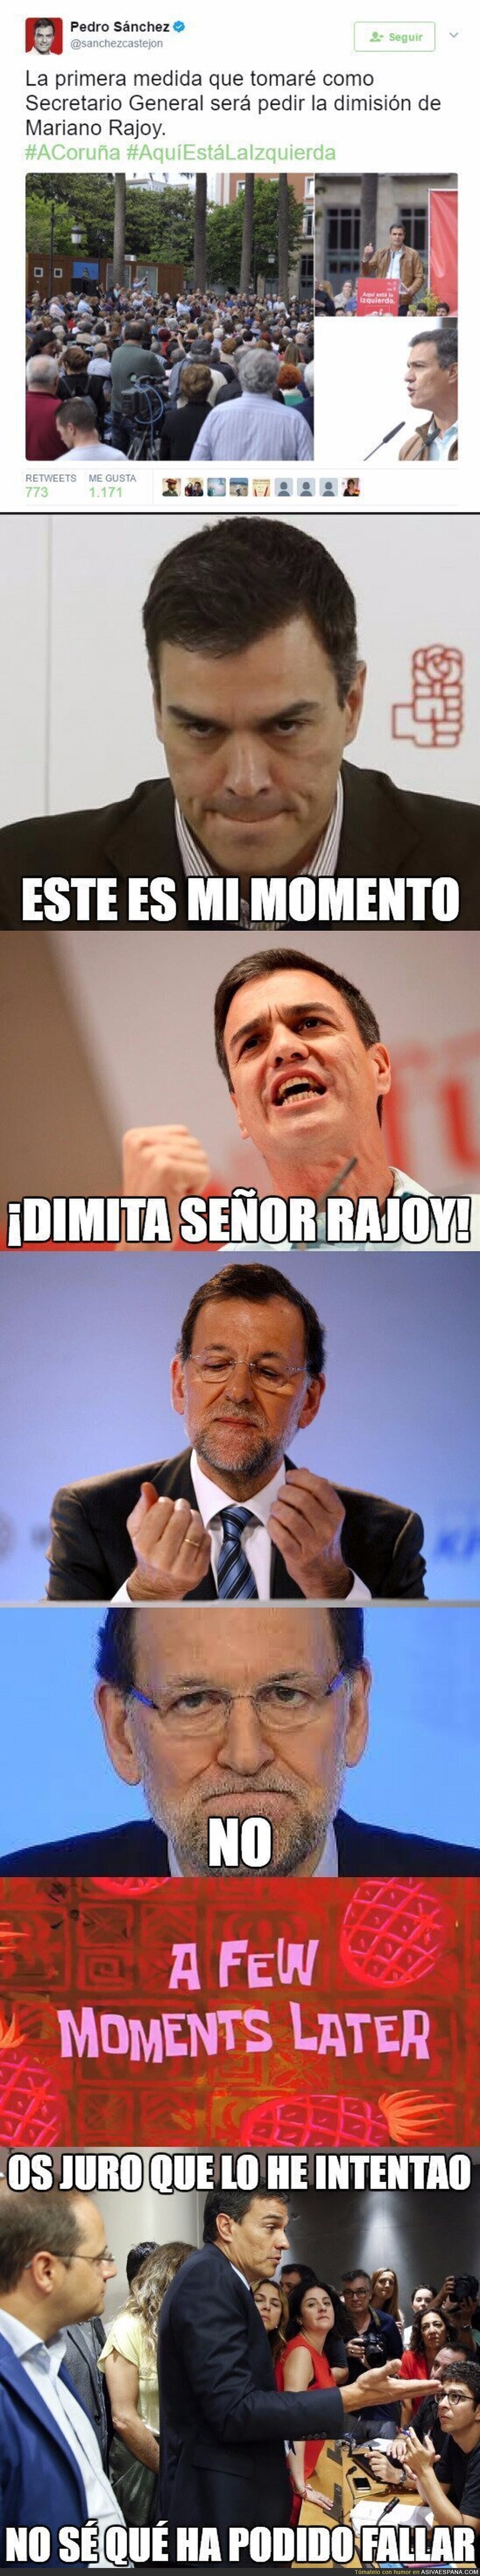 Pedro Sánchez pide la dimisión de Mariano Rajoy